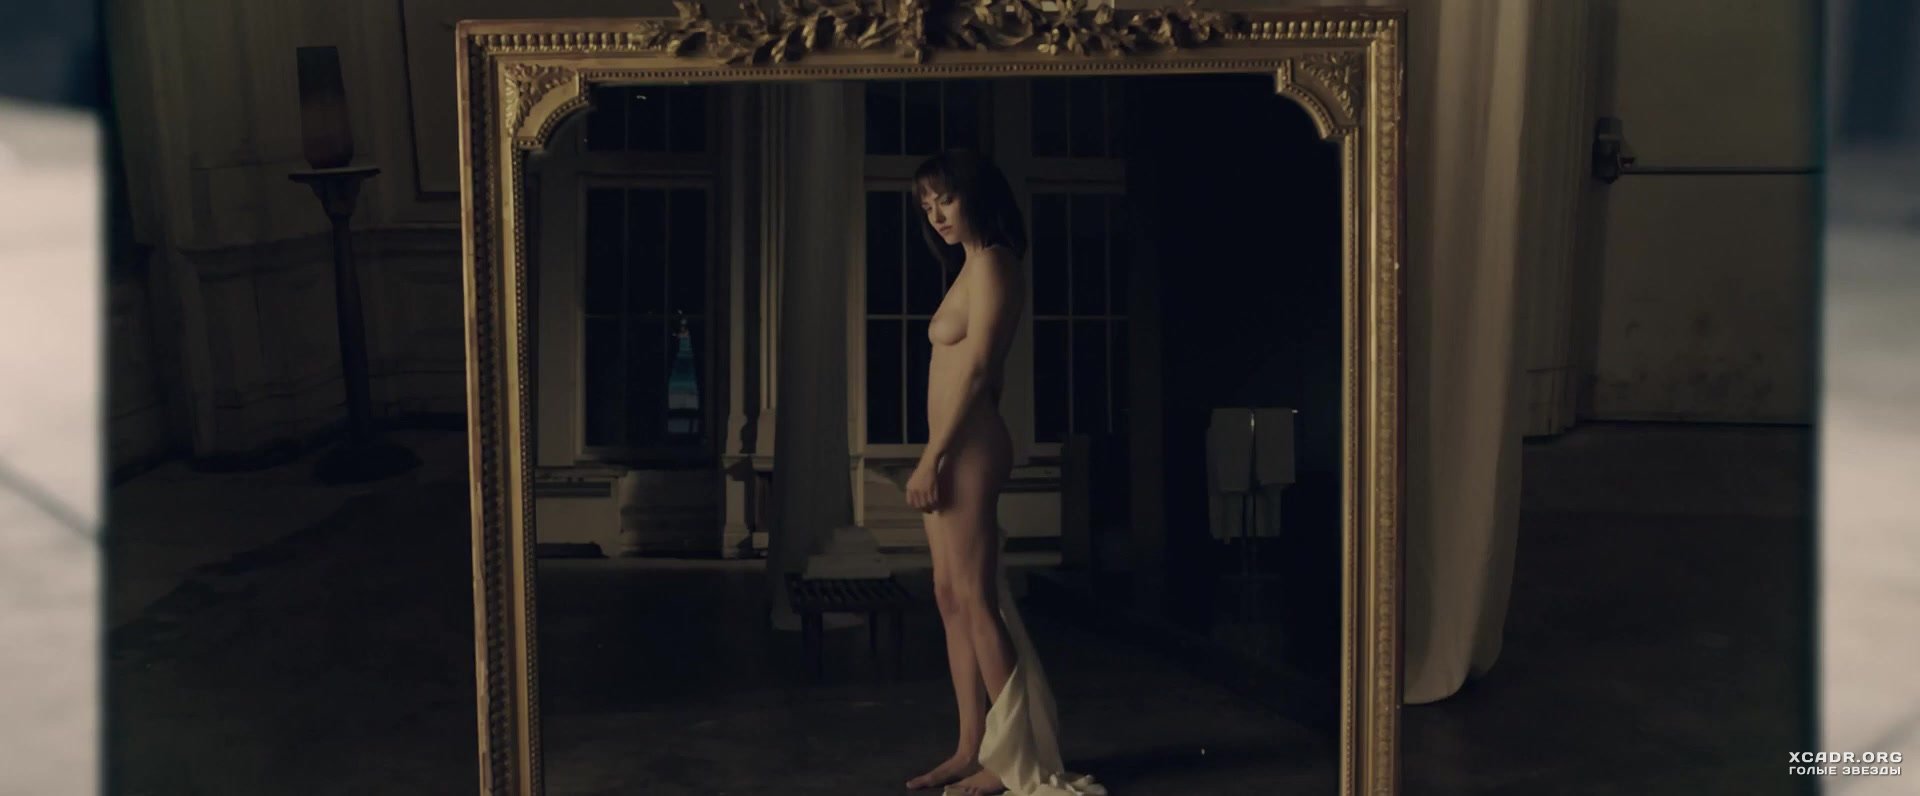 Голая Аманда Сайфред в постельной сцене из фильма "Анон" (2018) .